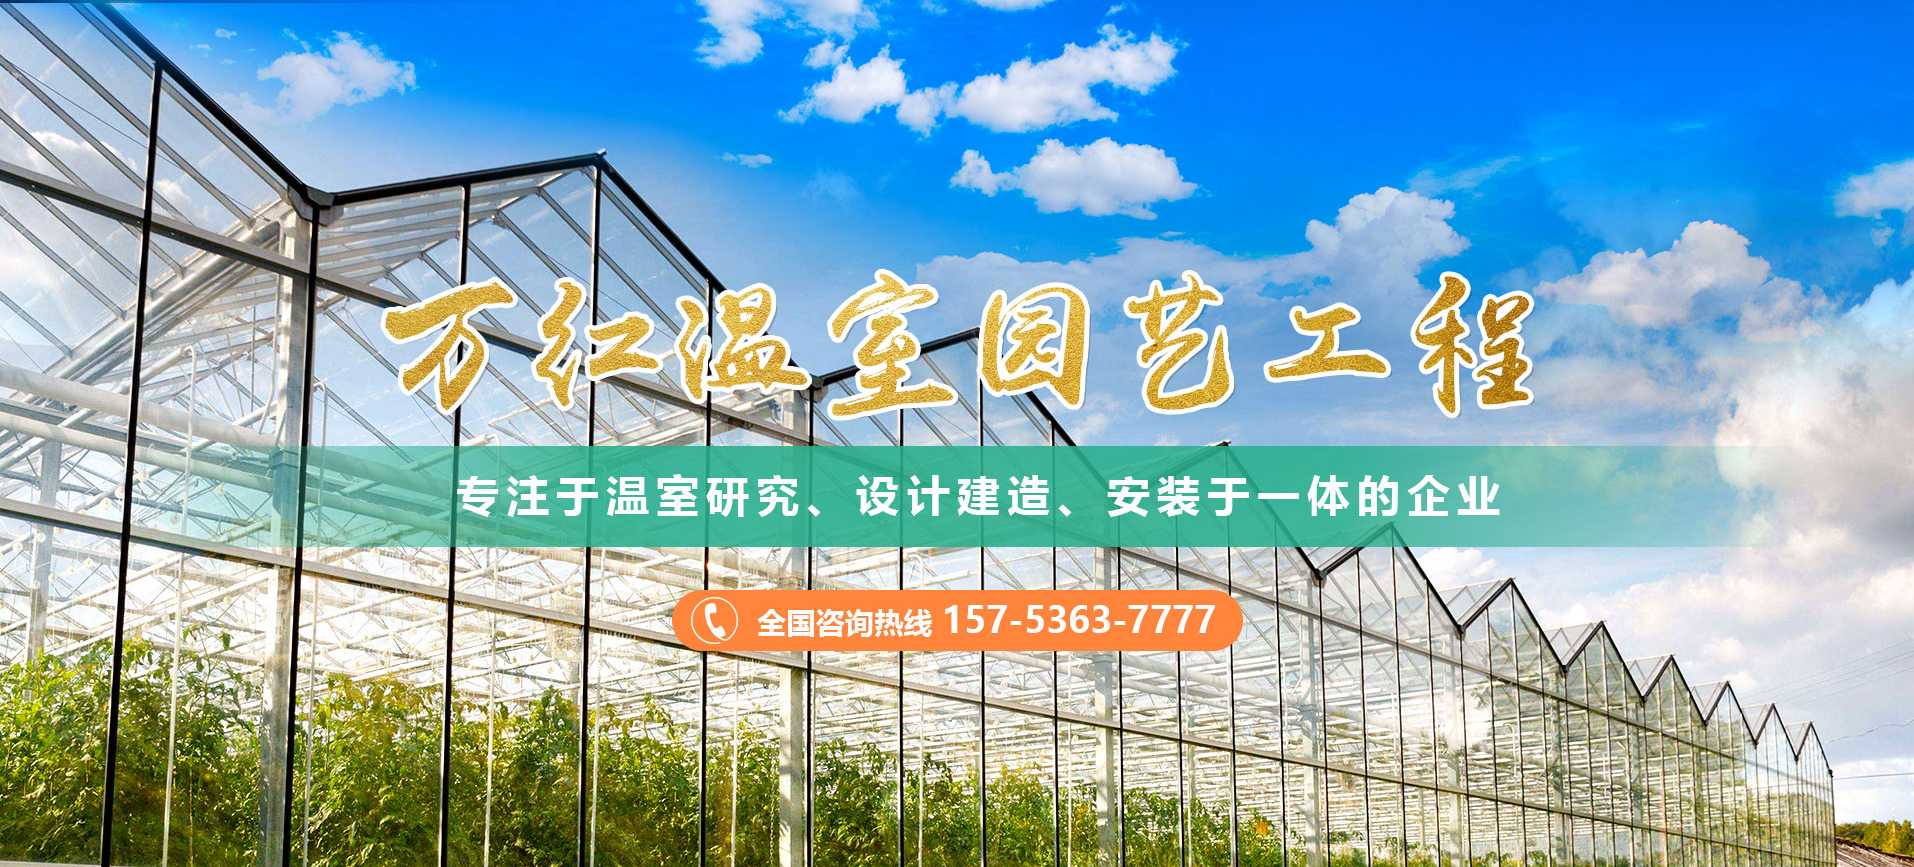 青州市万红温室园艺工程有限公司